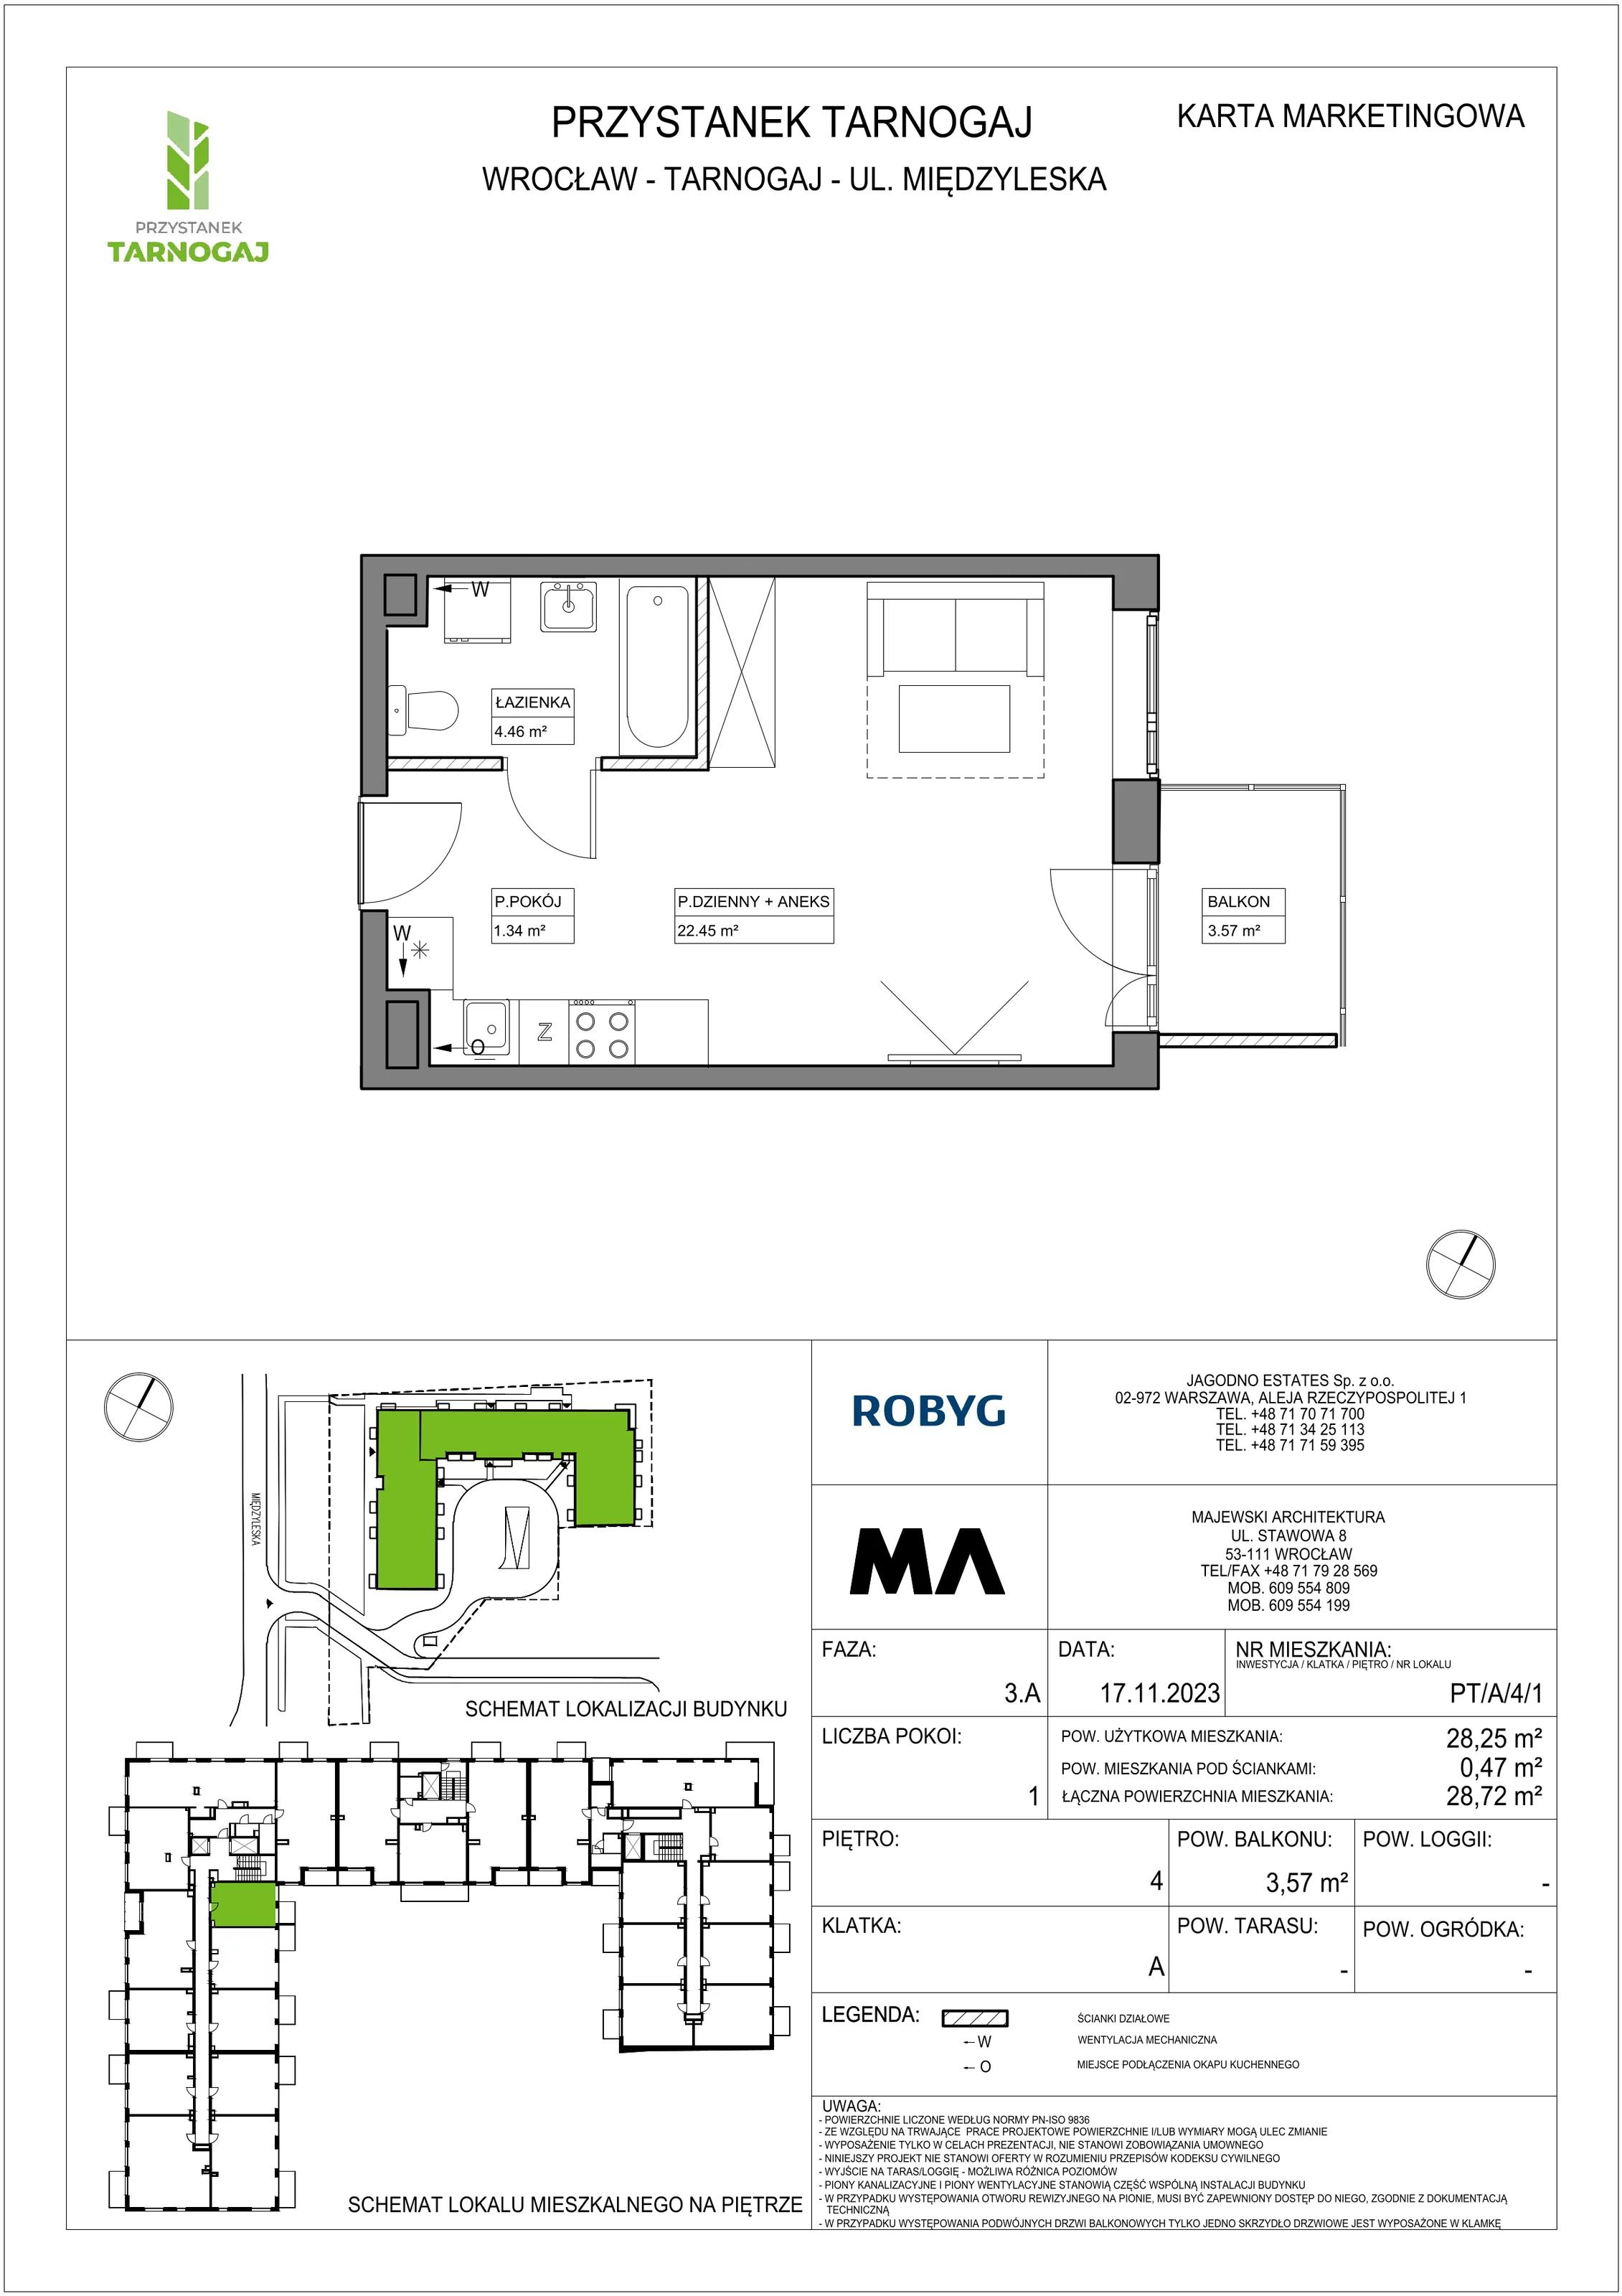 Mieszkanie 28,25 m², piętro 4, oferta nr PT/A/4/1, Przystanek Tarnogaj, Wrocław, Tarnogaj, Krzyki, ul. Międzyleska / Gazowa